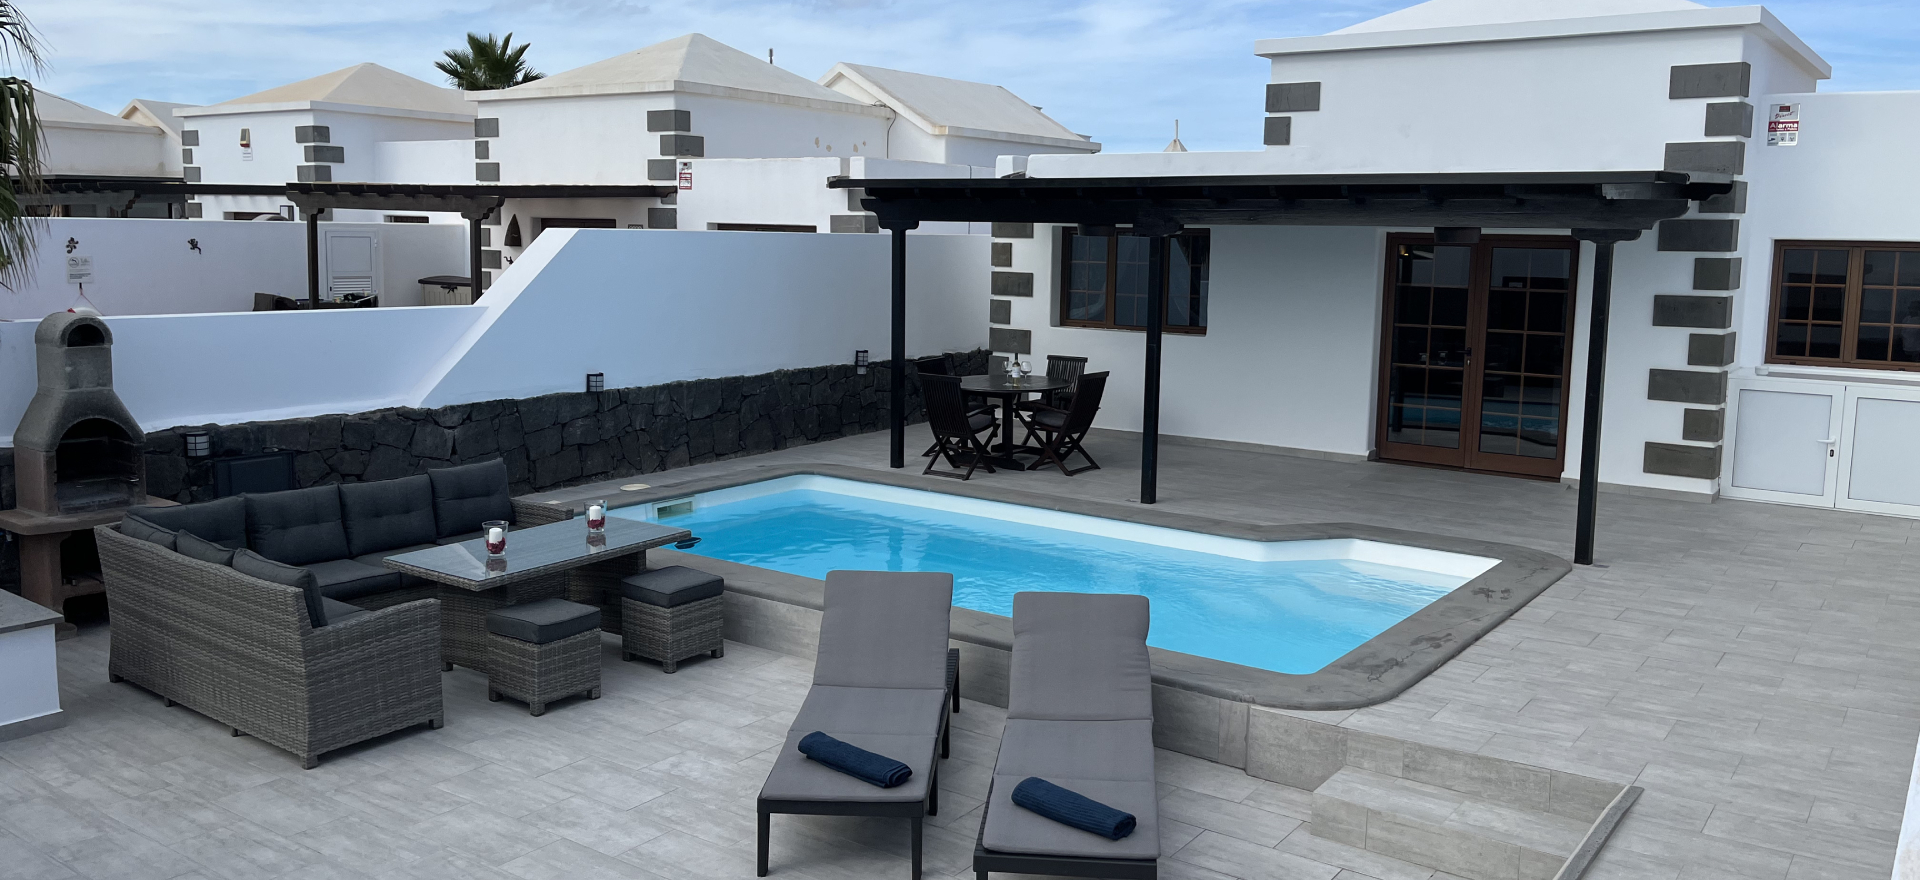 Rental Playa blanca villas with private pool